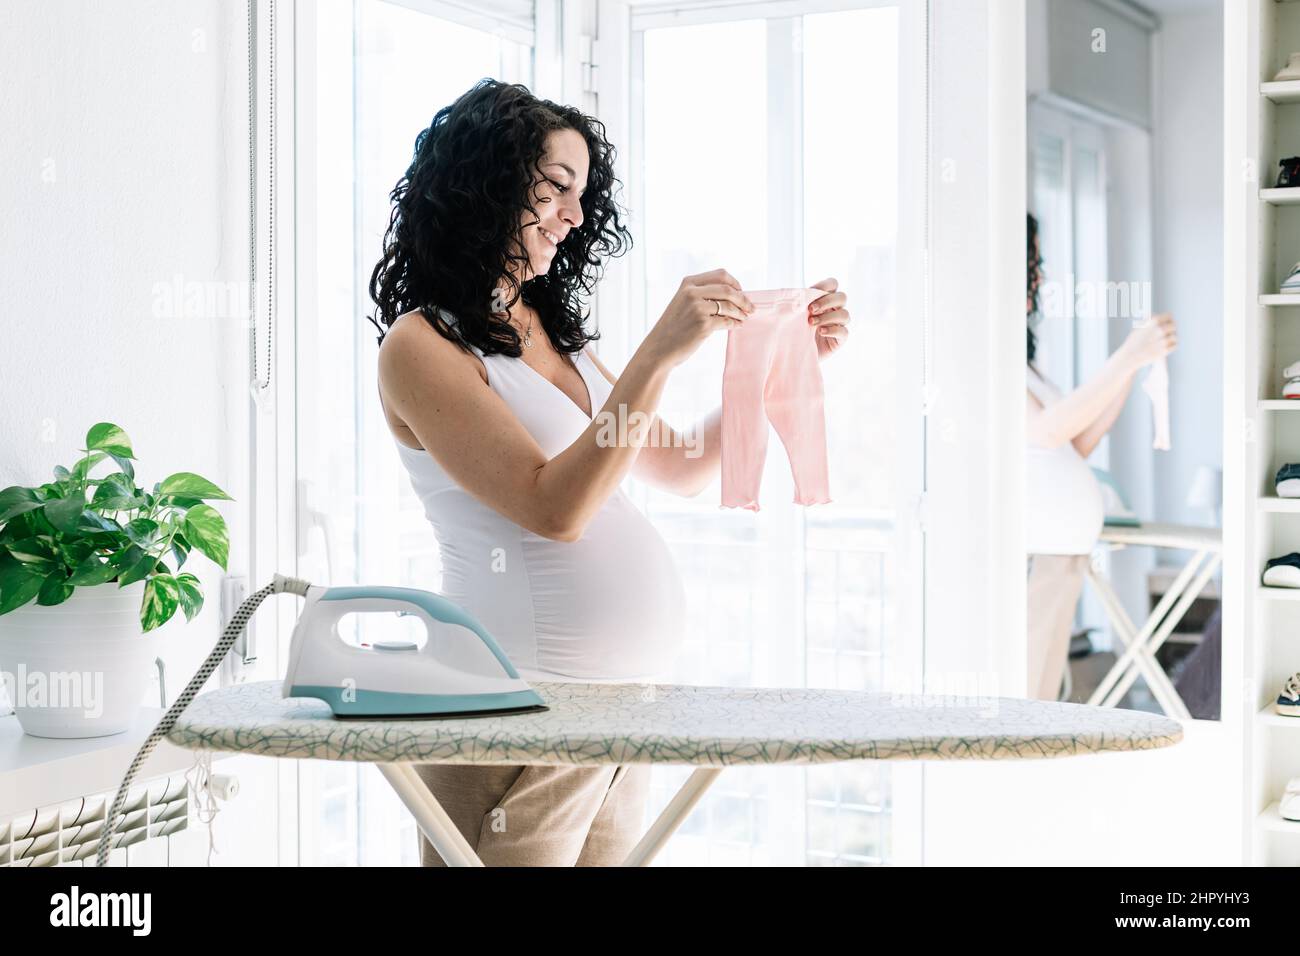 joven mujer embarazada bonita con pelo rizado plancha la ropa de su futuro bebé, preparando la habitación para el recién nacido Foto de stock